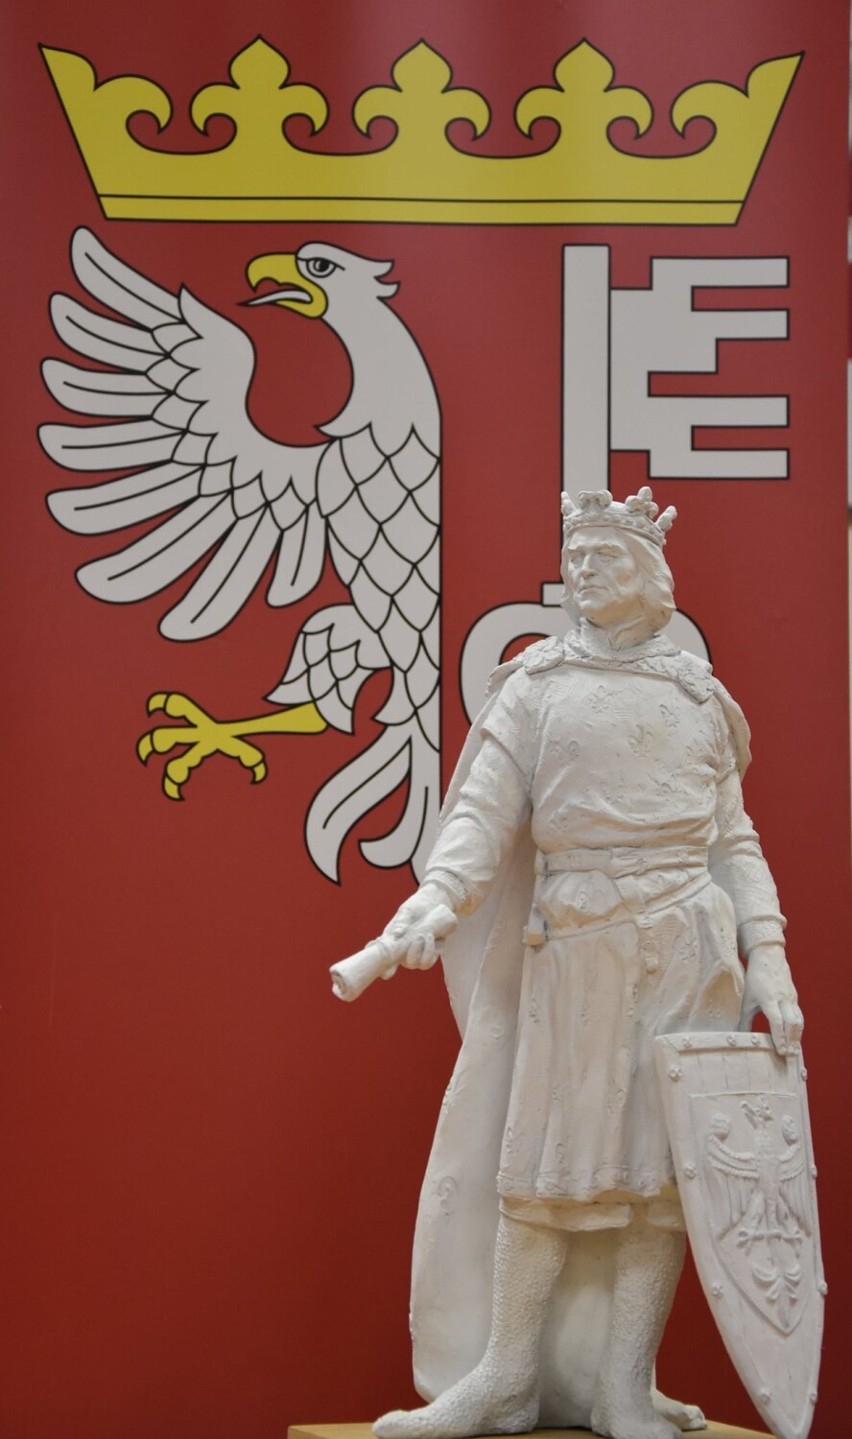 W Rogoźnie powstaje pomnik króla Przemysła II. Wiemy, kto będzie autorem